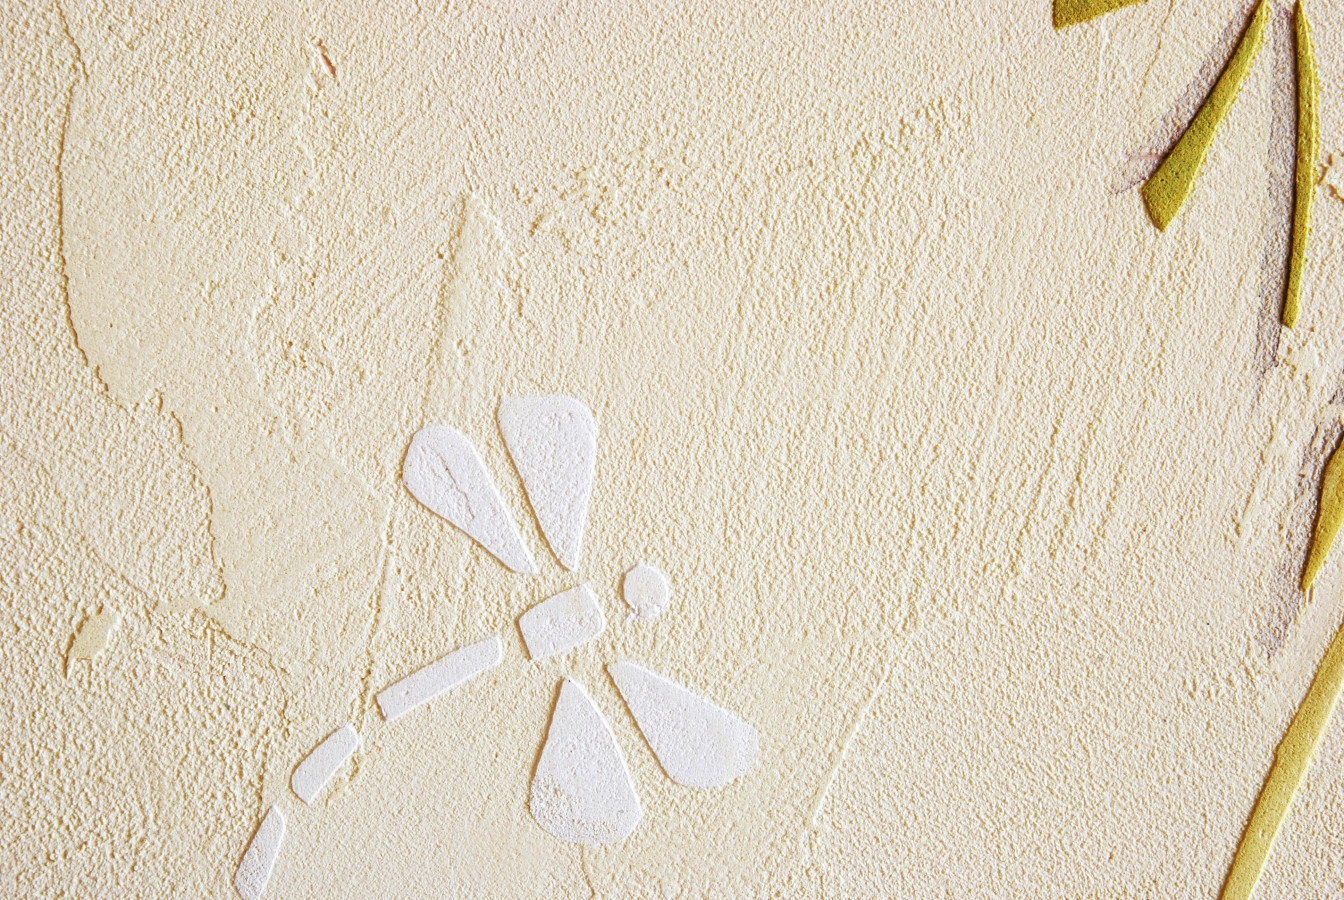 Dekoruota siena fiksuojama kokybišku laku, todėl galima plauti ir valyti.  Dekoruota siena. Interjero dizainas. Decorated wall.
Wall Decor.
Embossed wall decor.
Interior design. Dandelion, dragonfly.